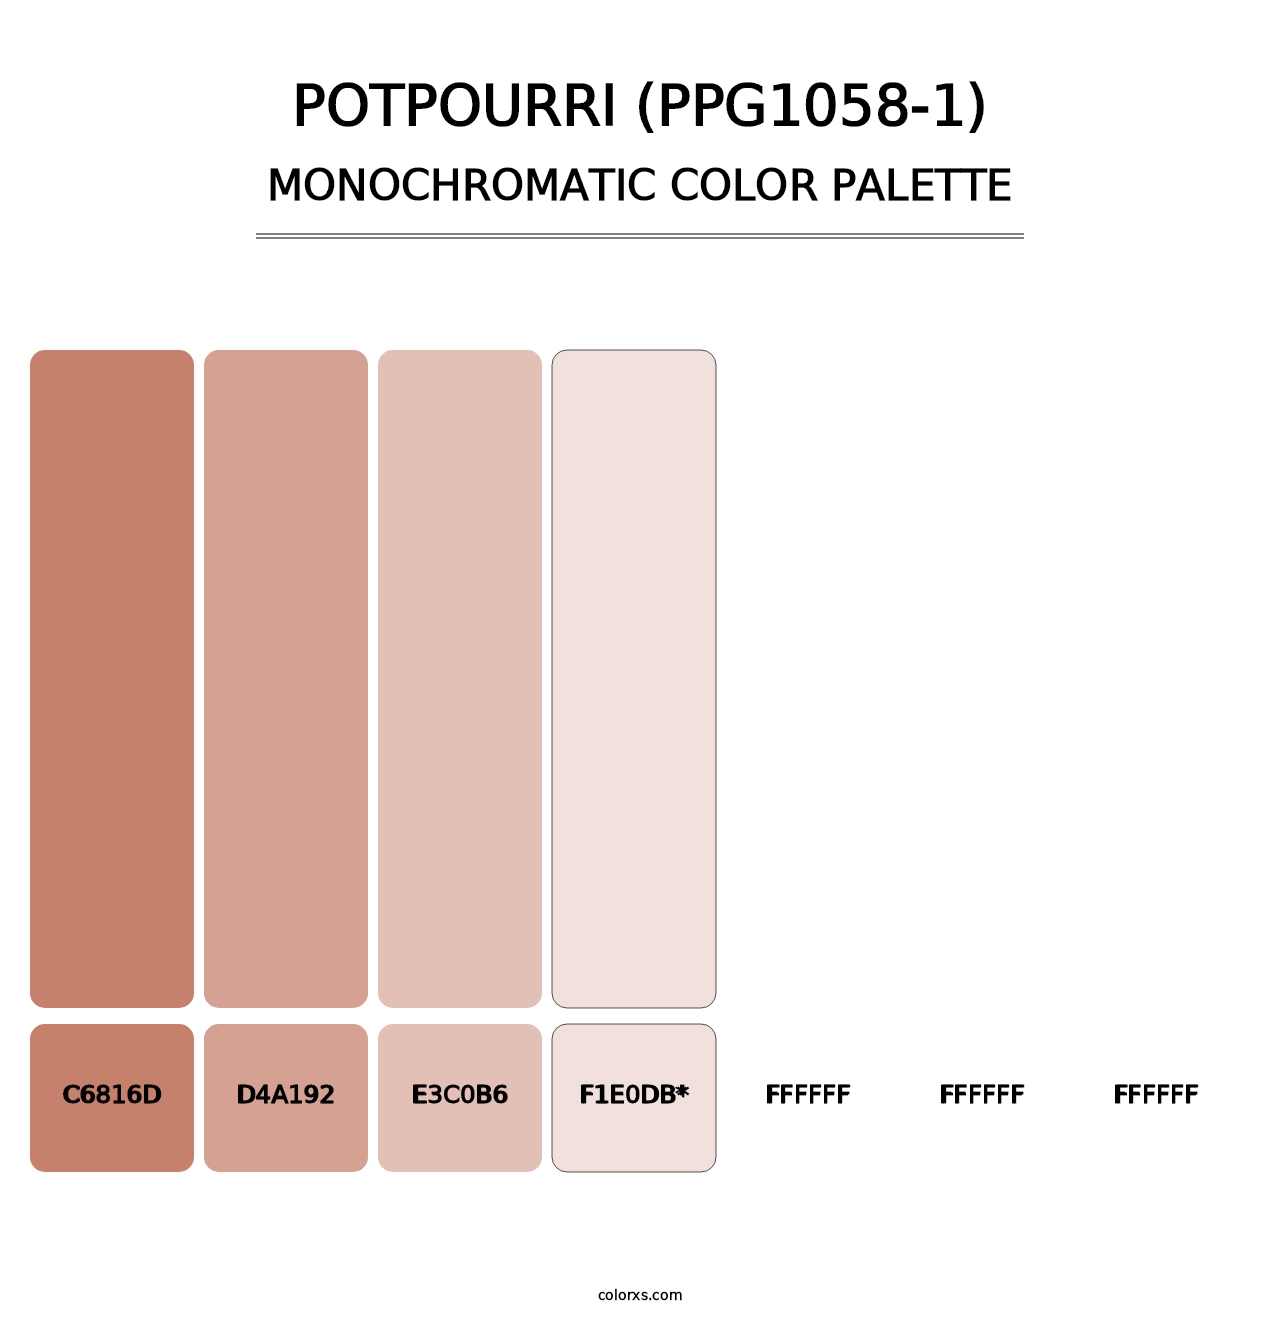 Potpourri (PPG1058-1) - Monochromatic Color Palette